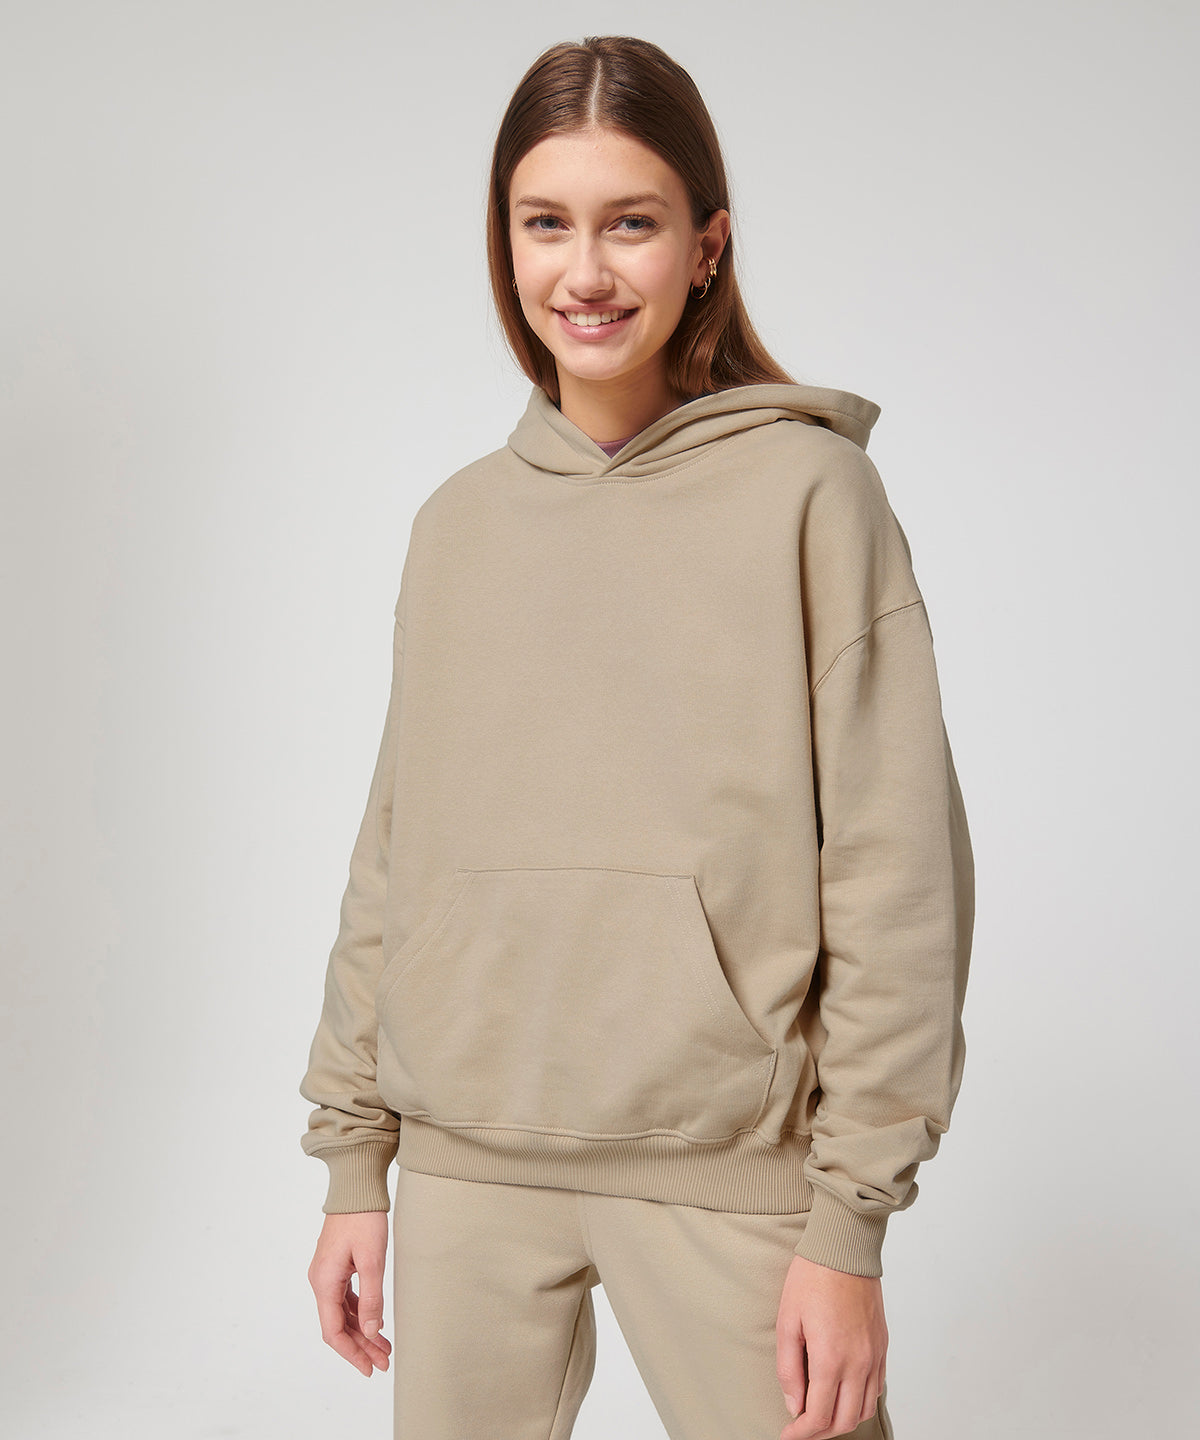 Unisex Cooper dry hoodie sweatshirt